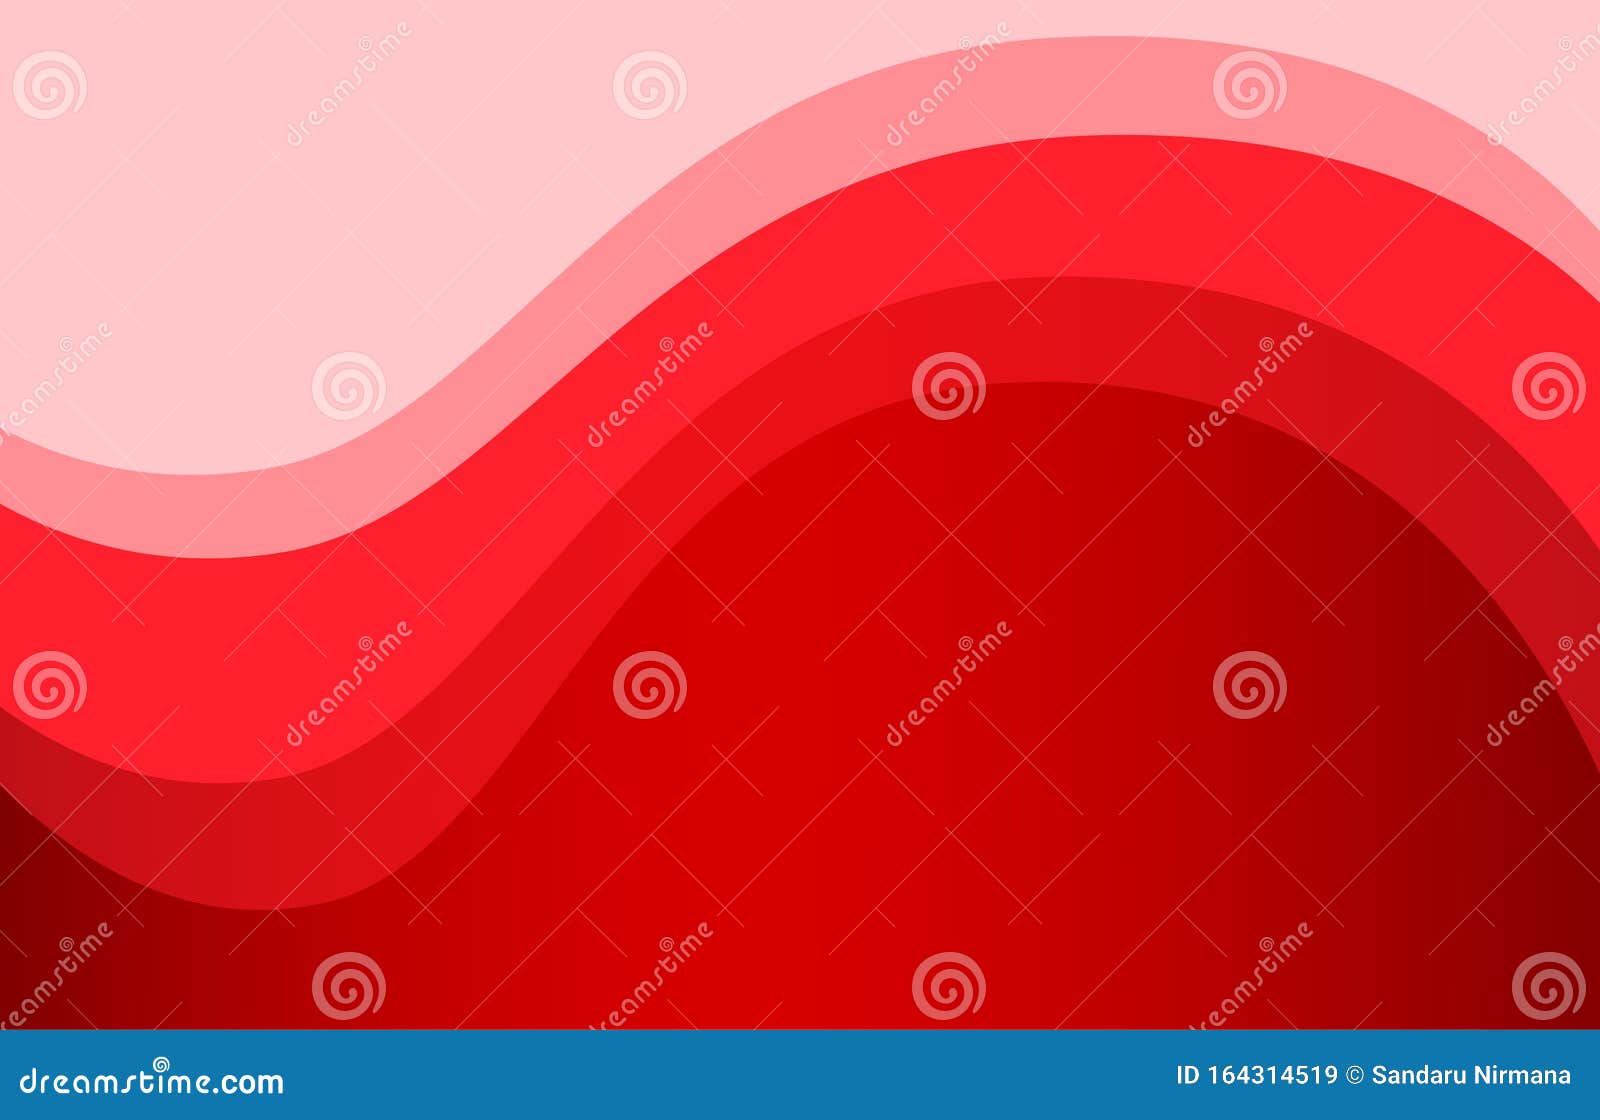 Với những đường sóng đỏ trừu tượng đầy nghệ thuật, bức hình này sẽ khiến bạn choáng ngợp và đắm say. Sự tinh tế trong cách sắp xếp và phối màu cho thấy sự khéo léo của người nghệ sĩ. Hãy để ý tới từng chi tiết để hiểu rõ hơn về bức hình đầy ý nghĩa này.